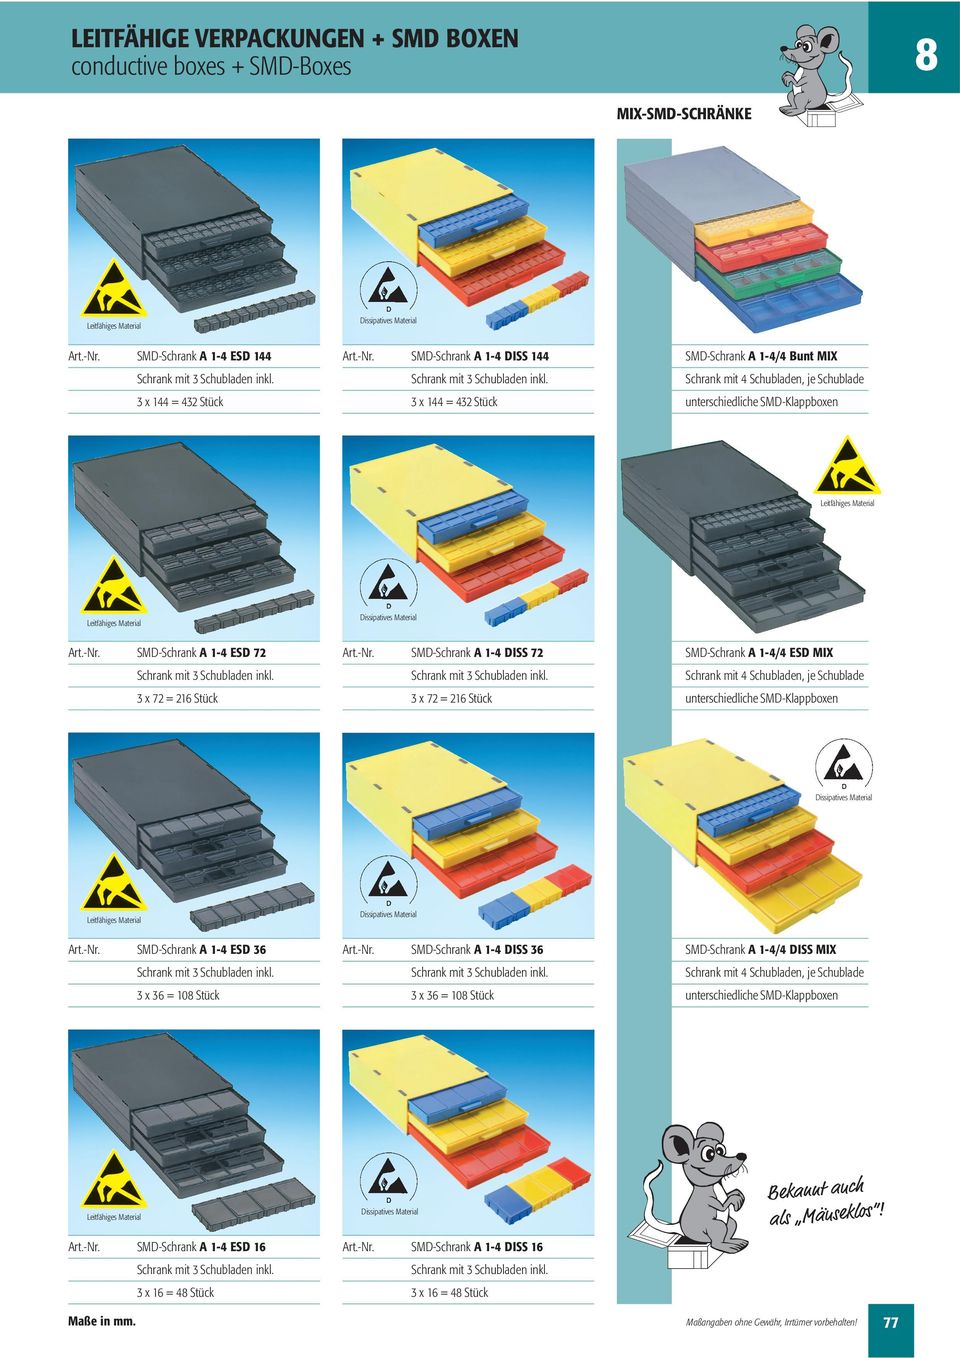 Schubladen, je Schublade unterschiedliche SMD-Klappboxen SMD-Schrank A 1-4 ESD 36 3 x 36 = 10 Stück SMD-Schrank A 1-4 DISS 36 3 x 36 = 10 Stück SMD-Schrank A 1-4/4 DISS MIX